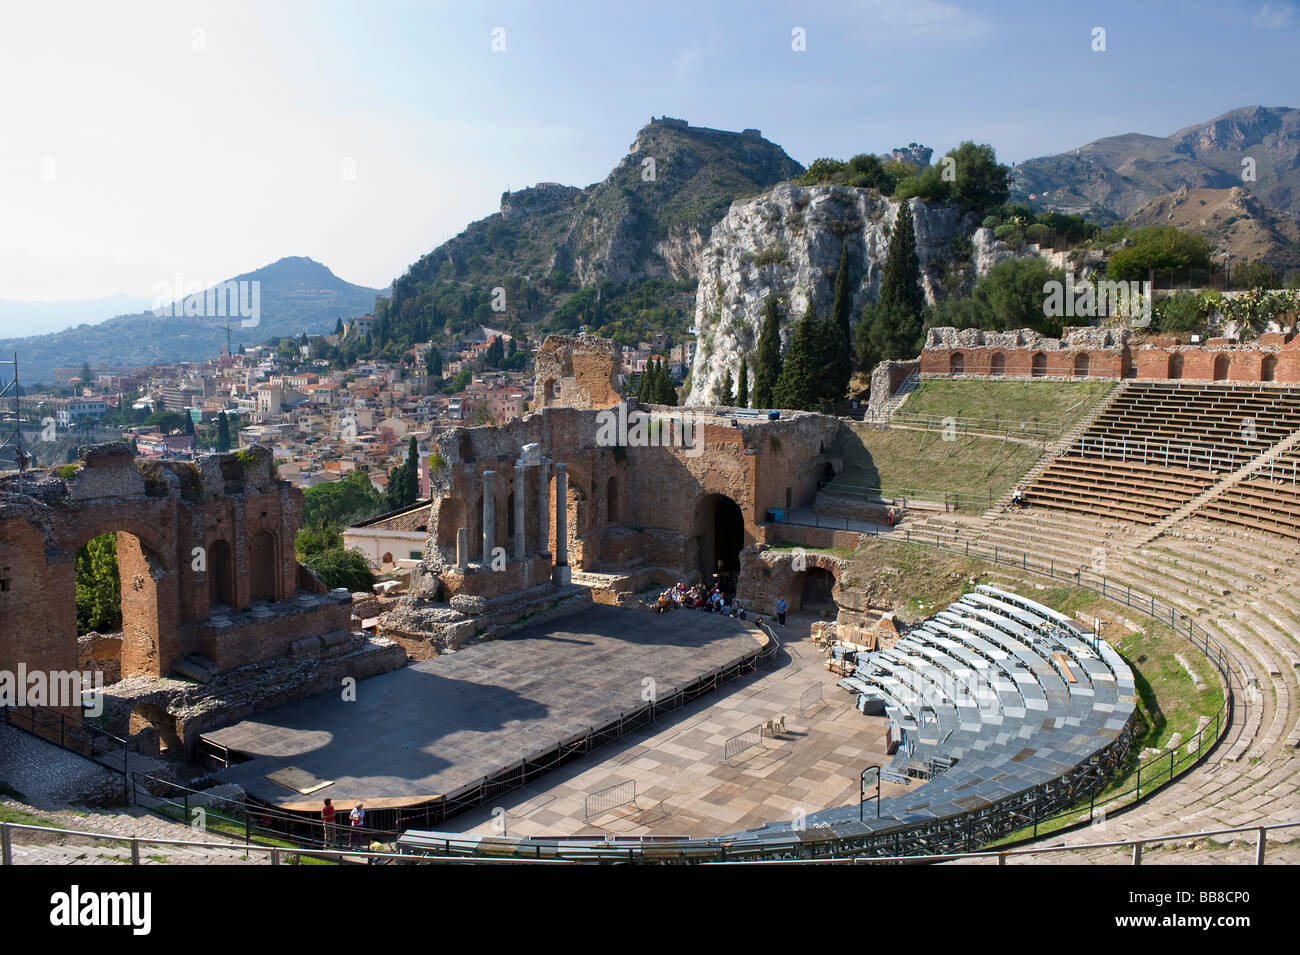 Greek amphitheatre, Taormina, Sicily, Italy Stock Photo